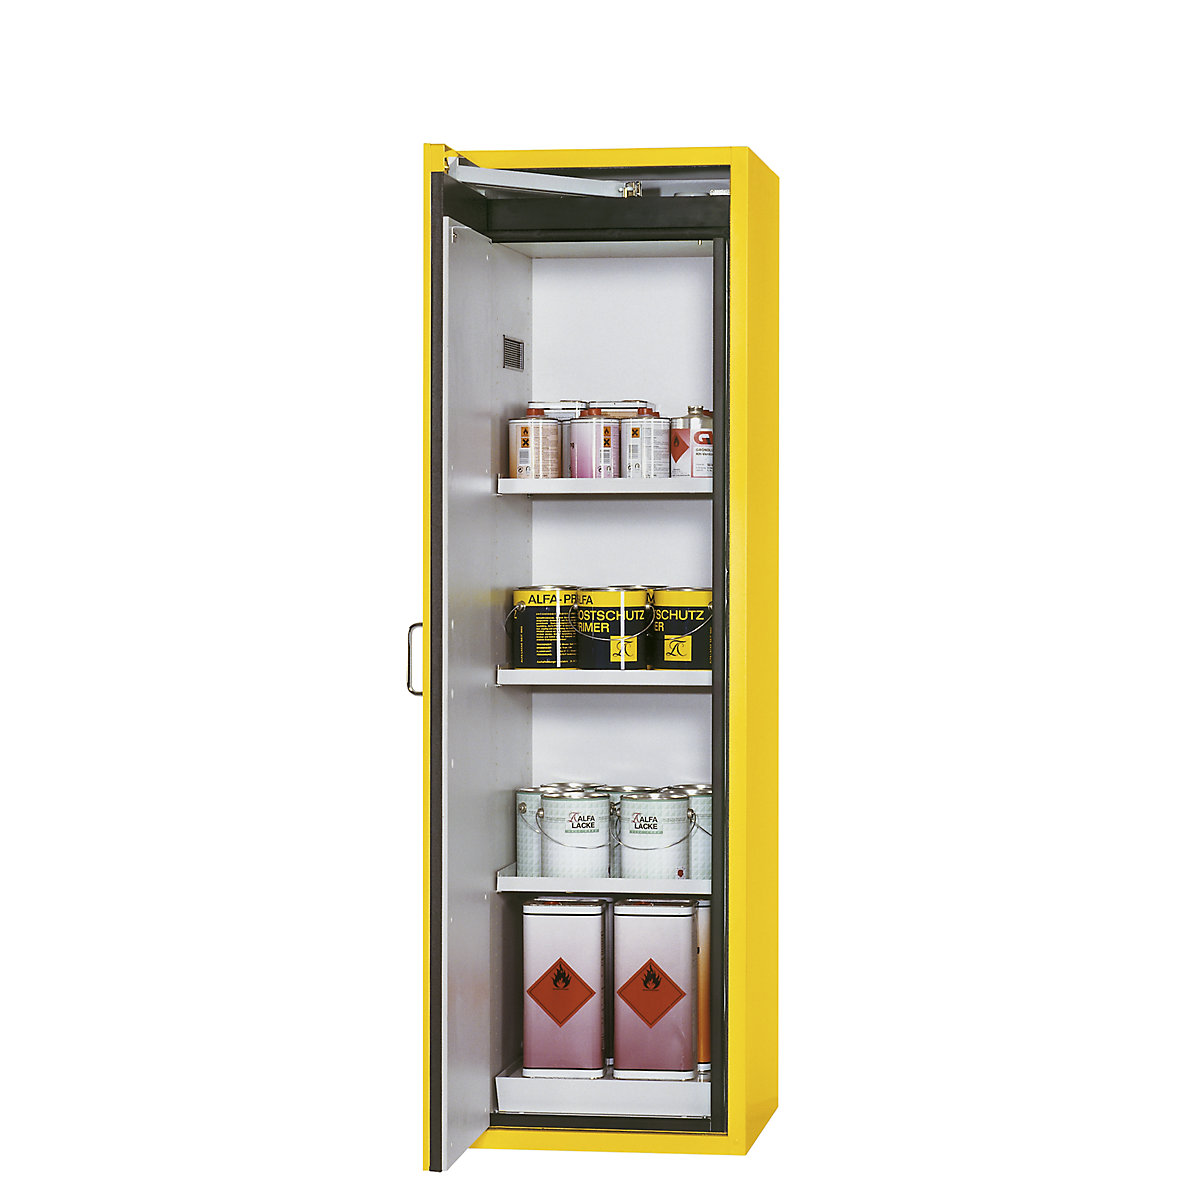 Fire resistant hazardous goods storage cupboard, type 90 – asecos